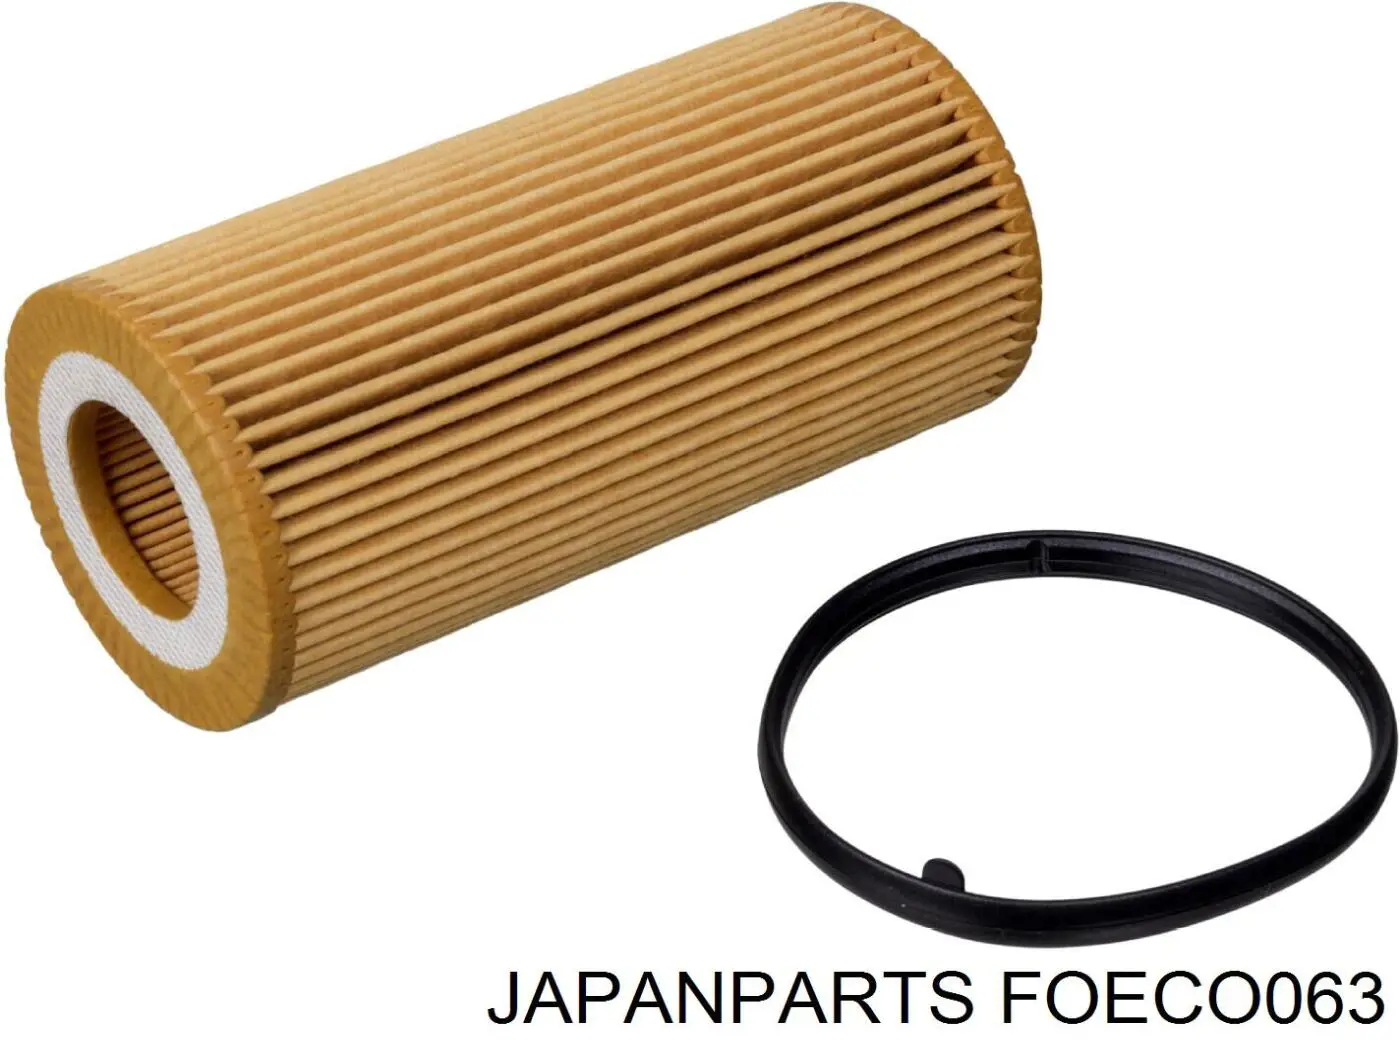 FOECO063 Japan Parts filtro de aceite